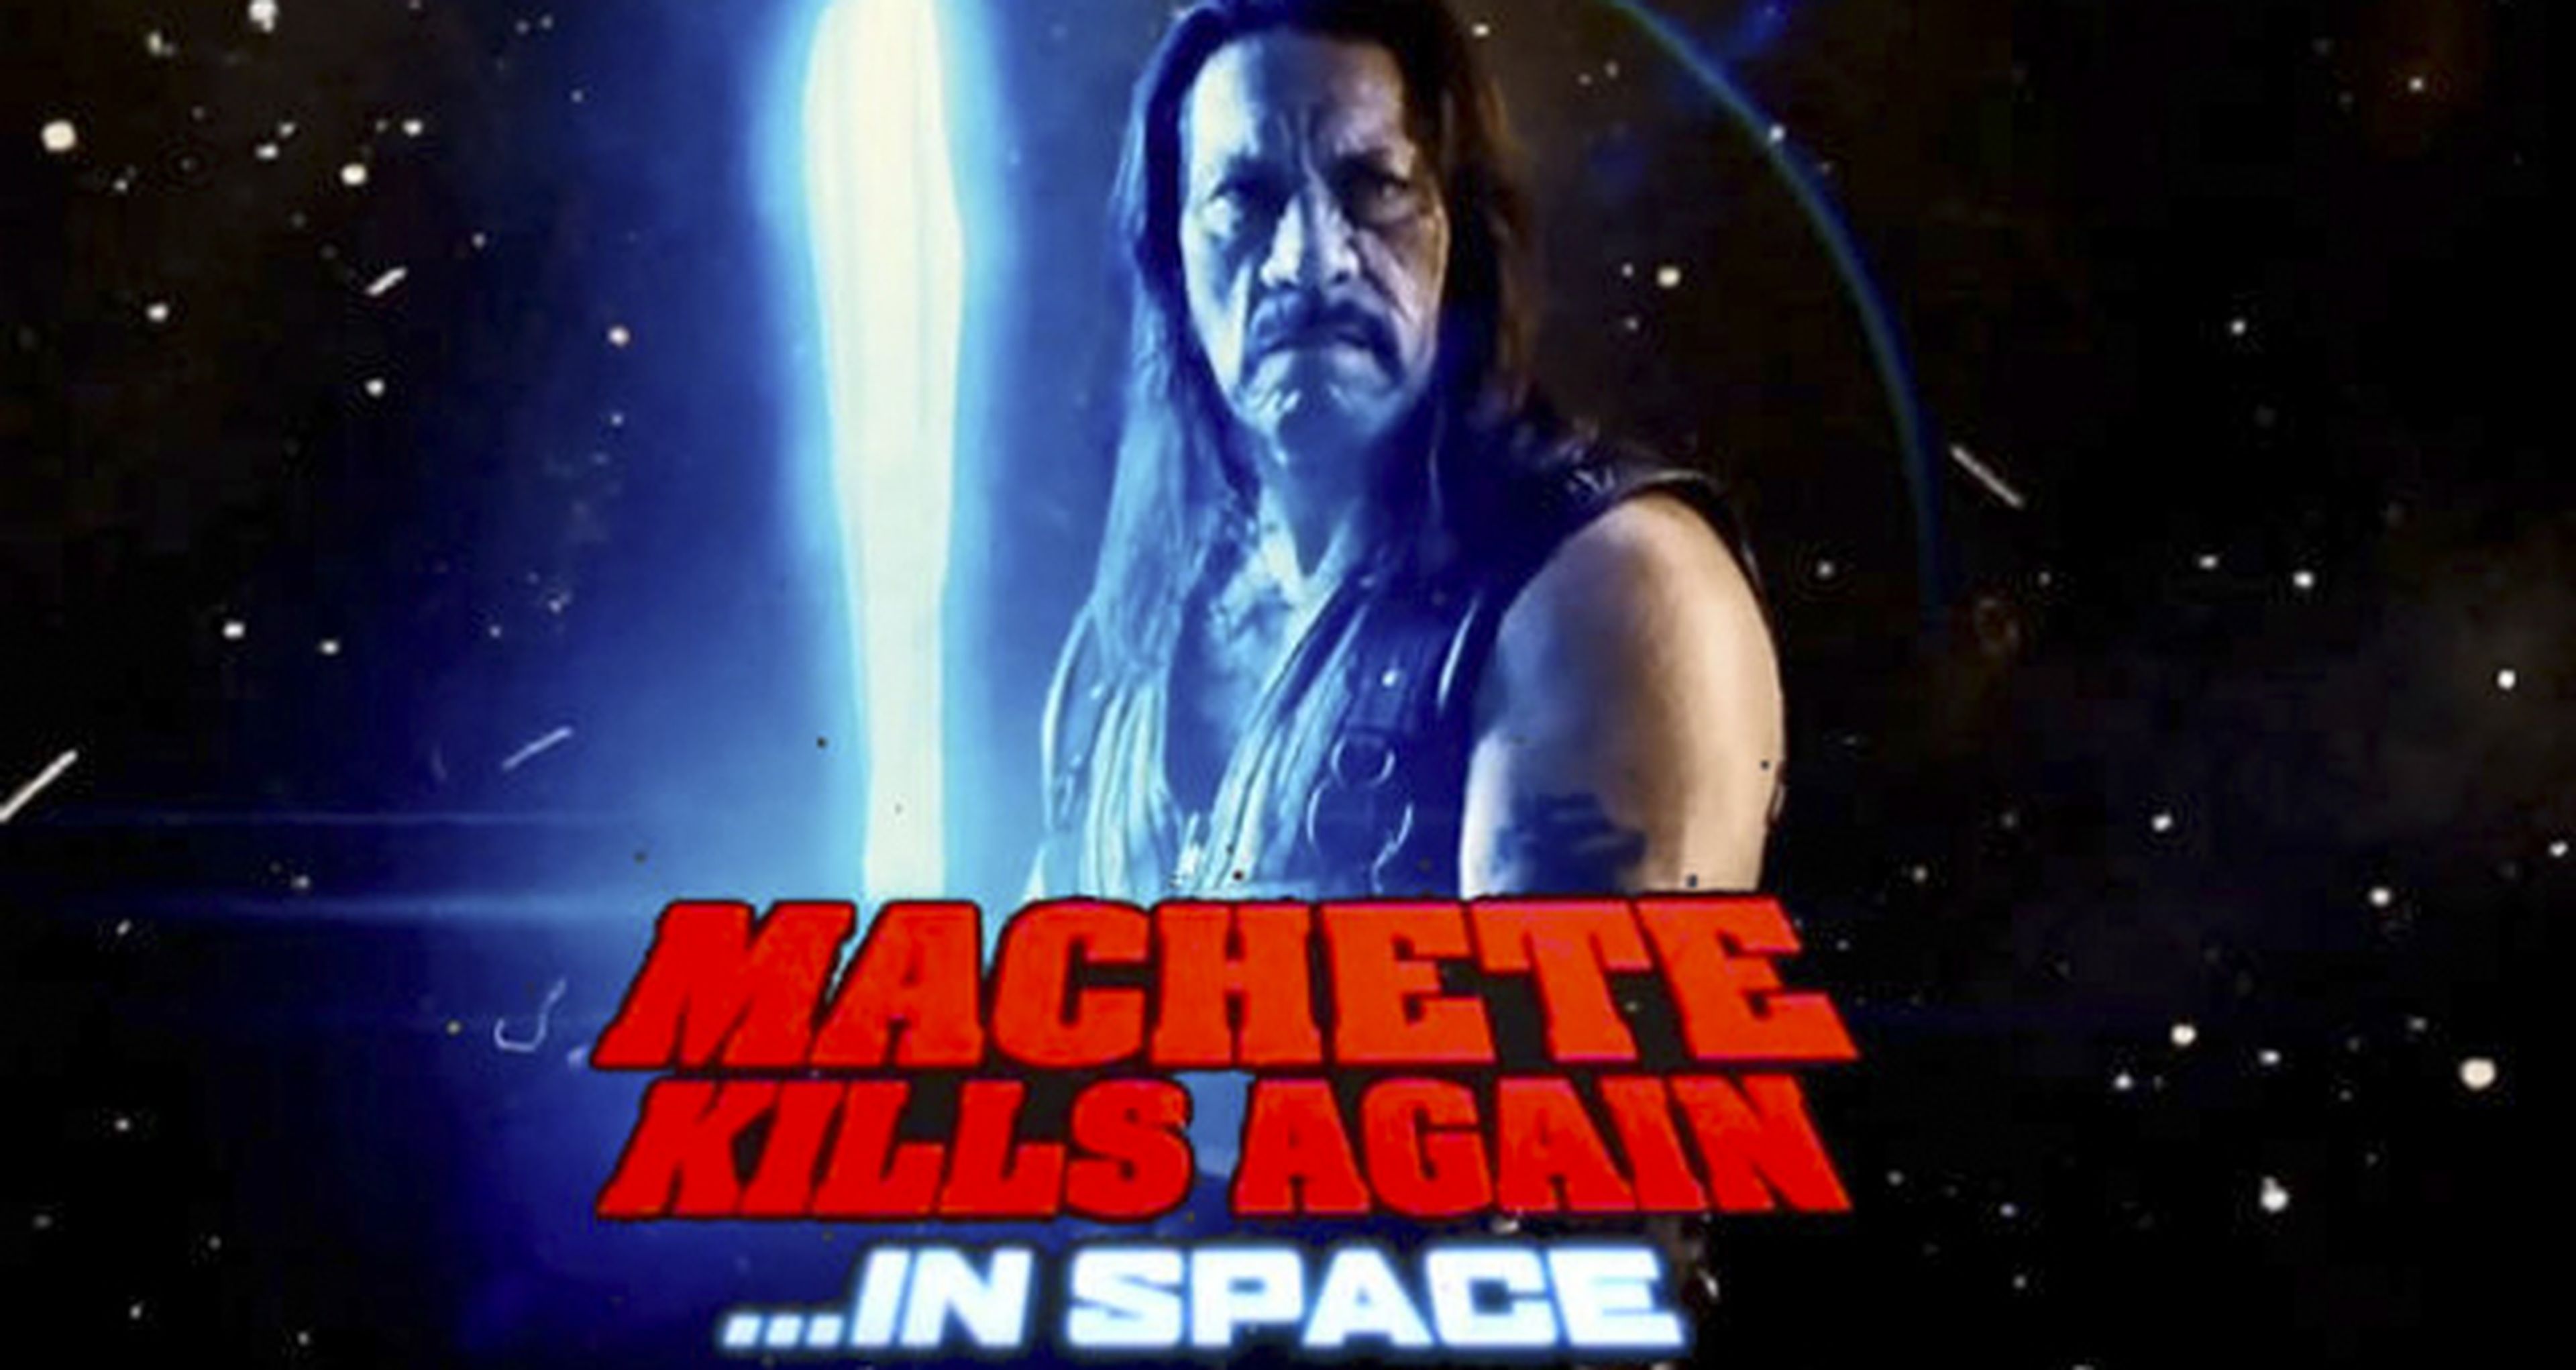 Machete Kills Again... In Space! confirmada por Danny Trejo